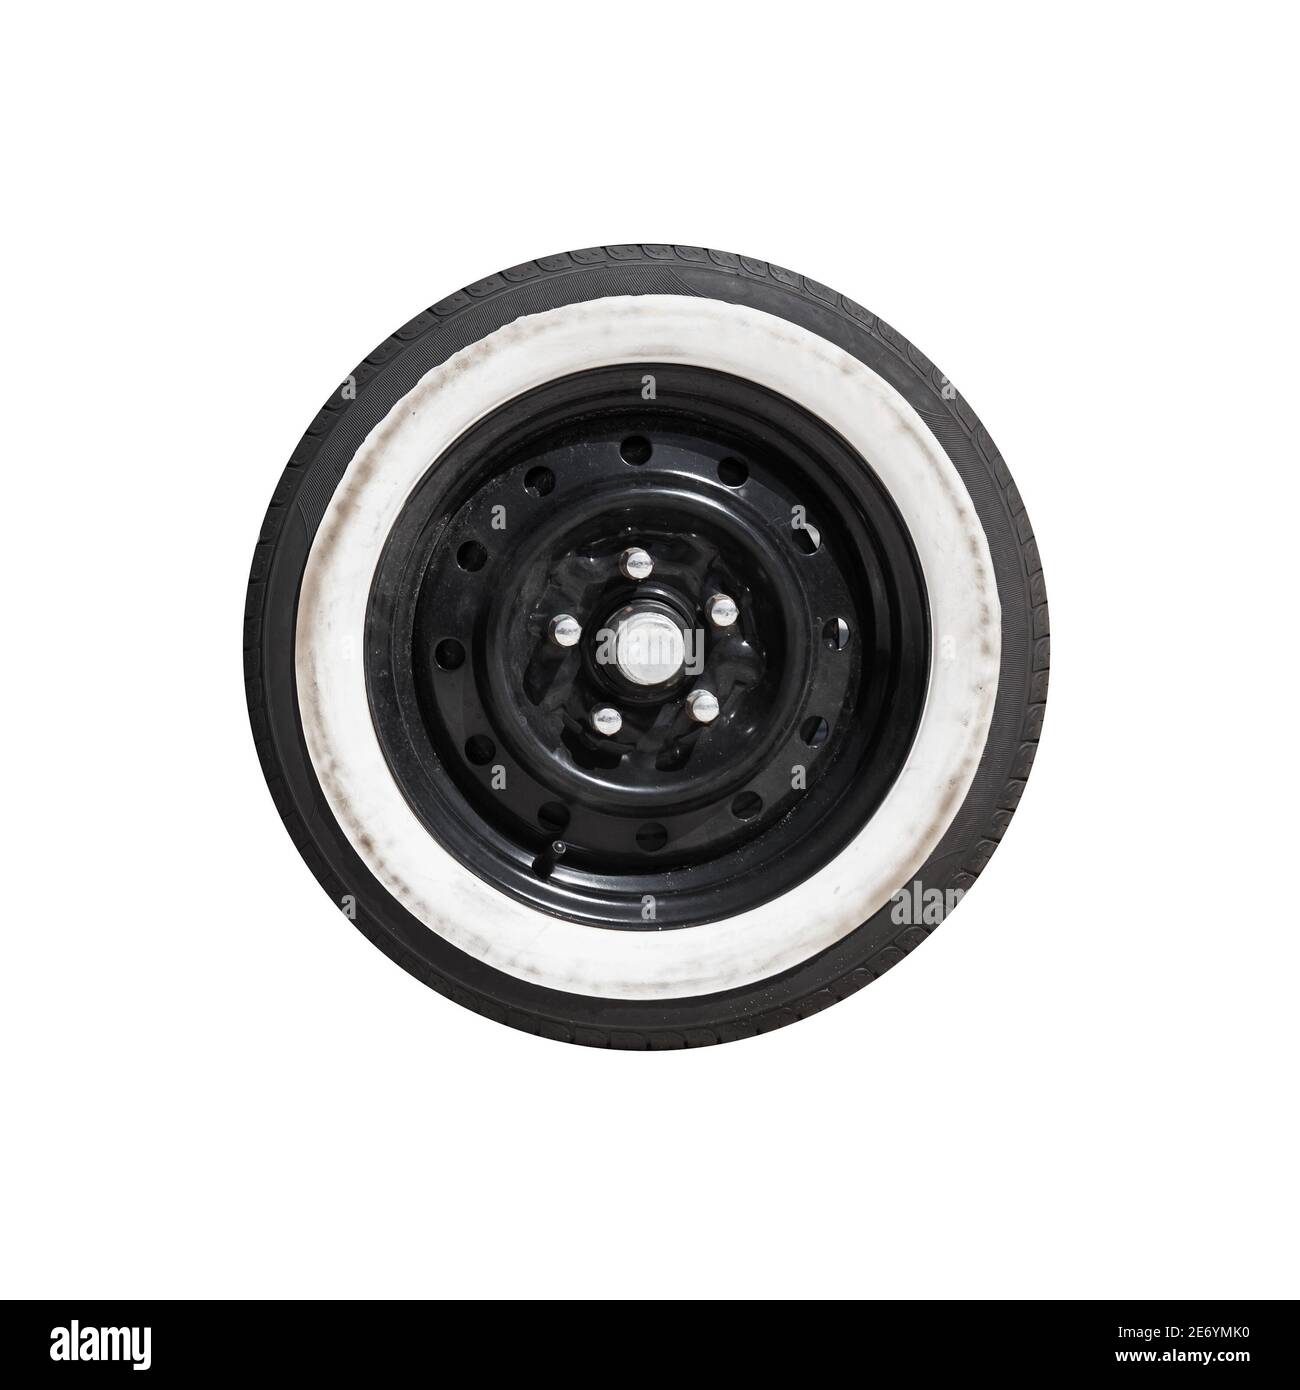 Schwarzes LKW-Rad mit weißem Streifen über Reifen lackiert. Nahaufnahme Objektfoto isoliert auf weißem Hintergrund Stockfoto